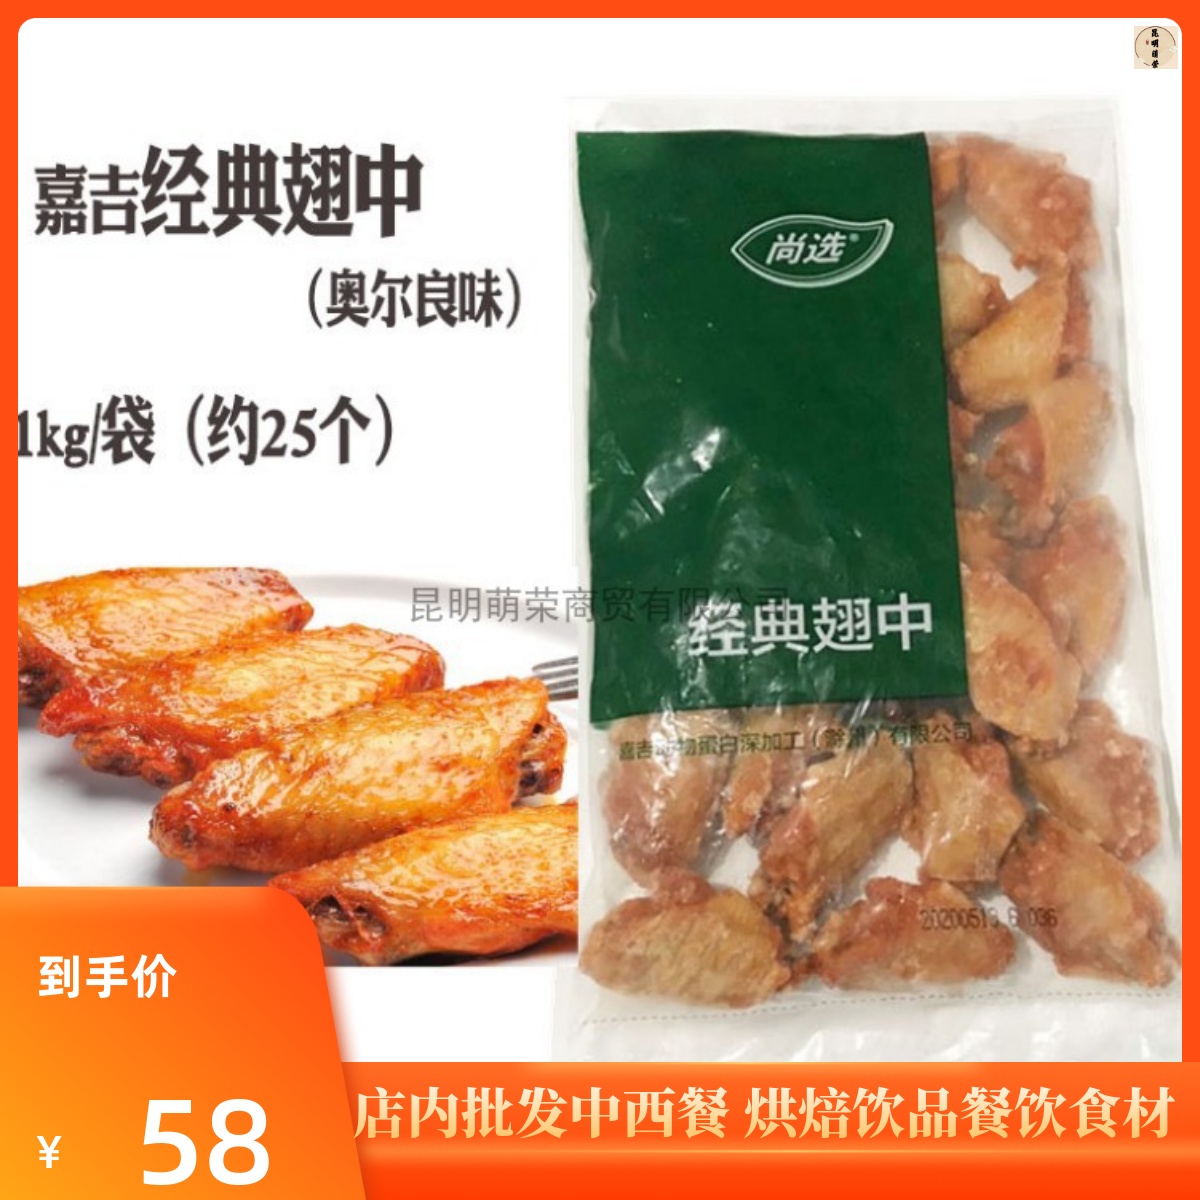 嘉吉经典翅中1kg约25个  西餐美食小吃奥尔良风味翅中 腌制鸡翅中